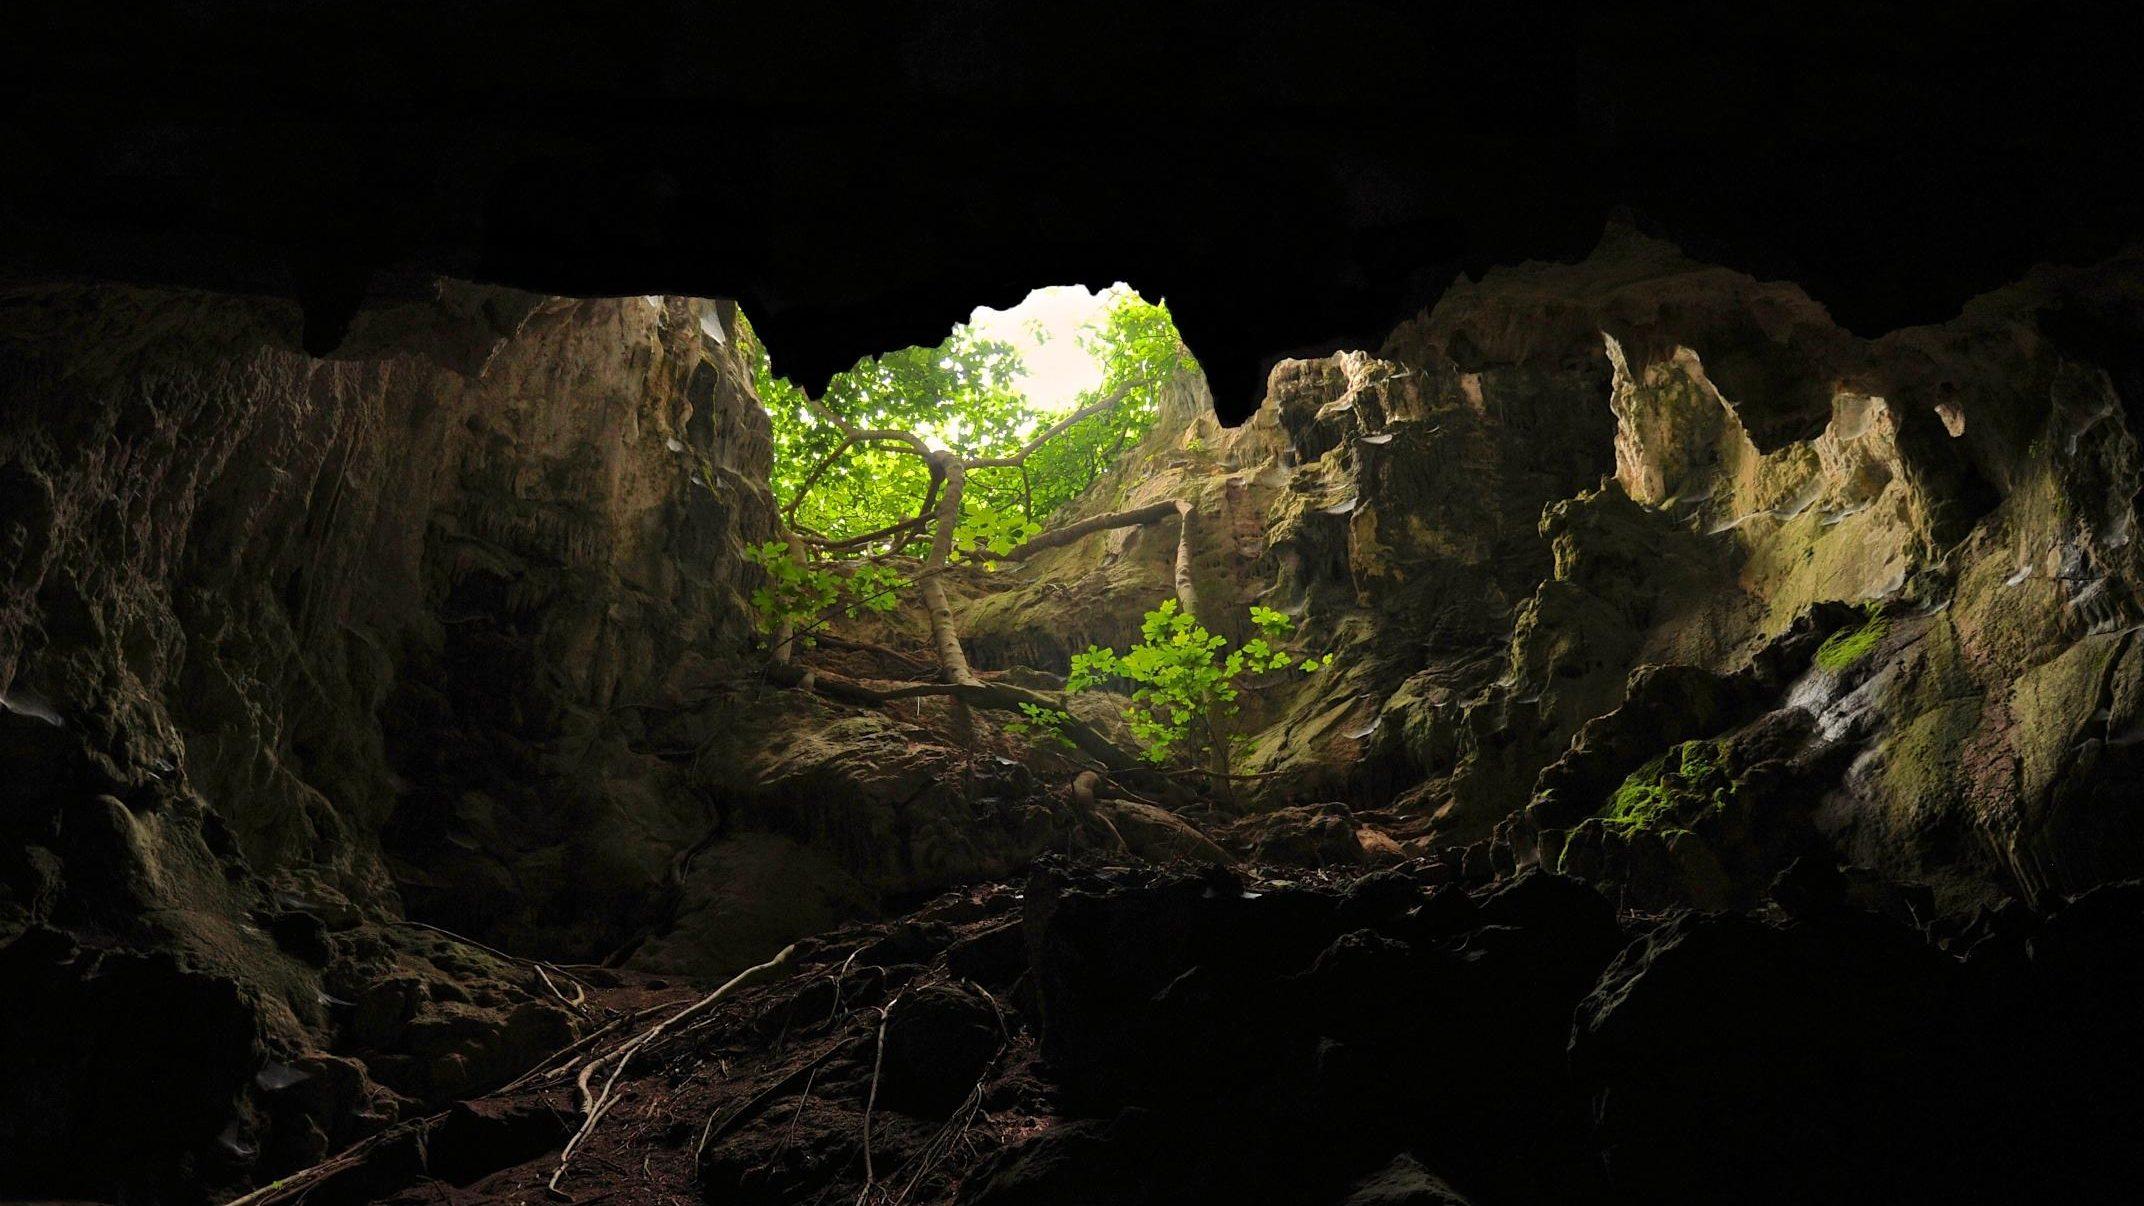 Пещеры Глоом (Gloomy Cave) - это невероятно красивое место в Норвегии, которое привлекает туристов со всего мира